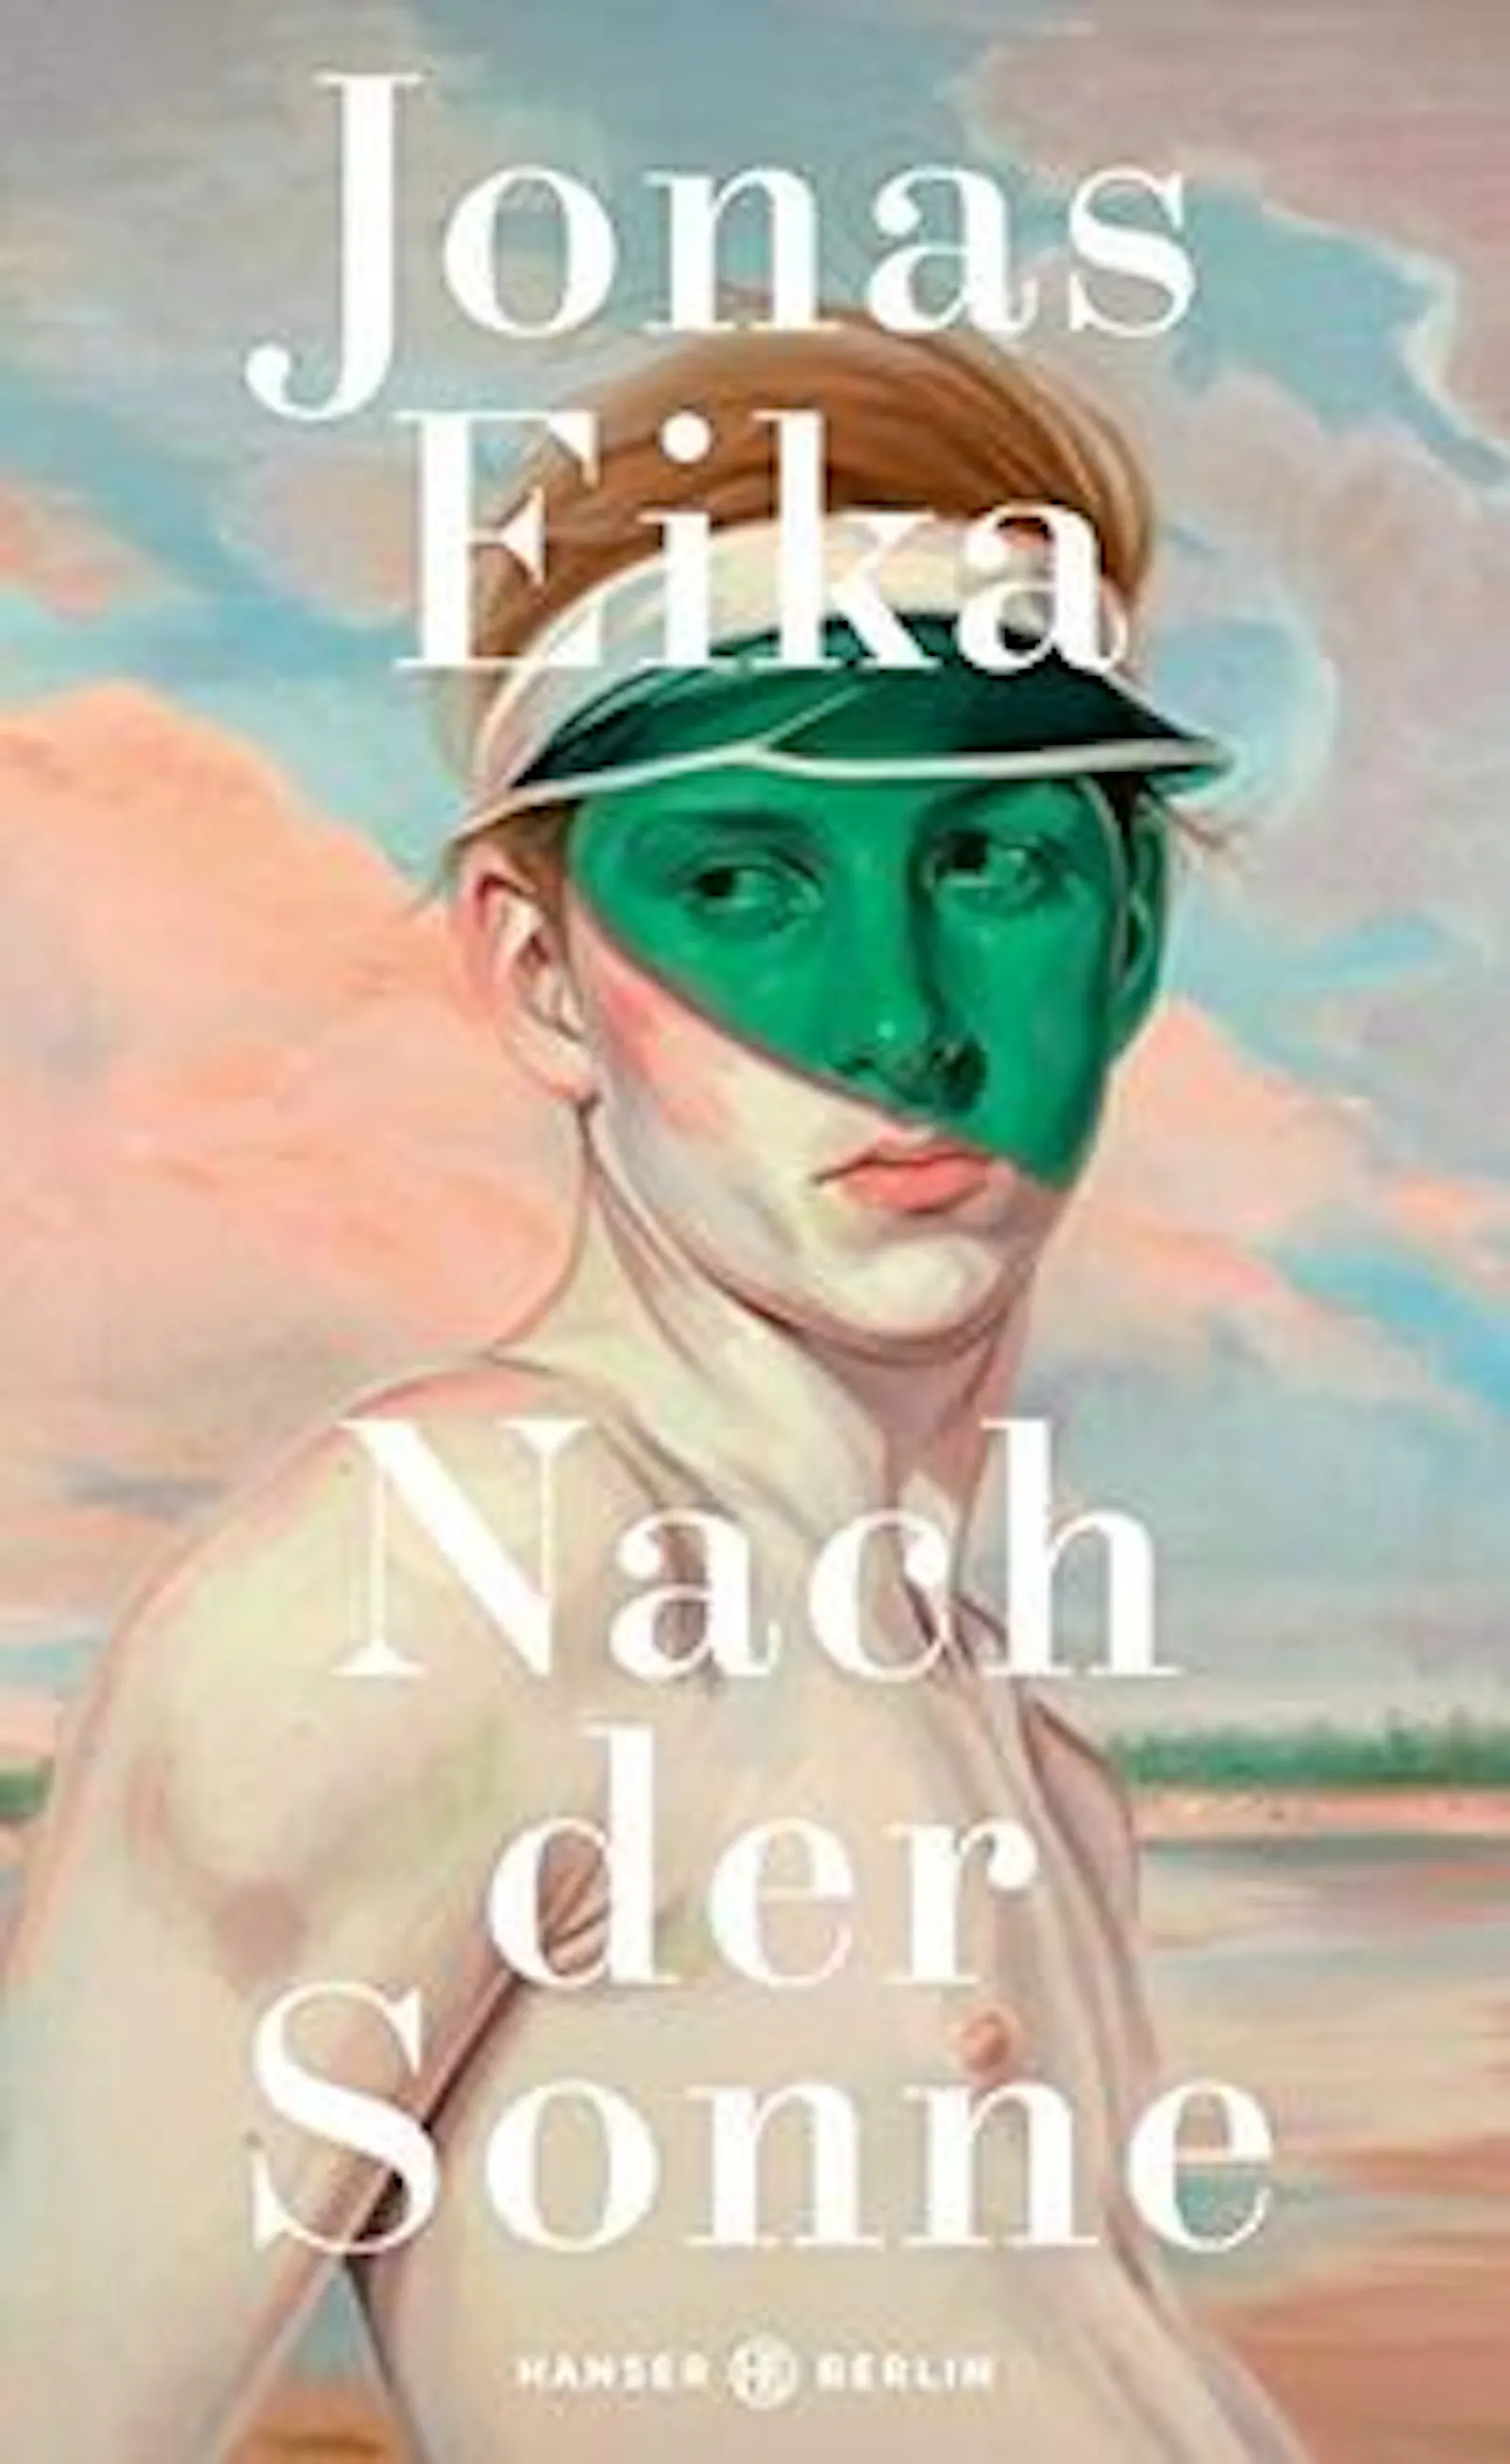 Gemalte junger Mann mit grüner Schirmmütze auf dem Cover von Jonas Eikas Buch "Nach der Sonne"